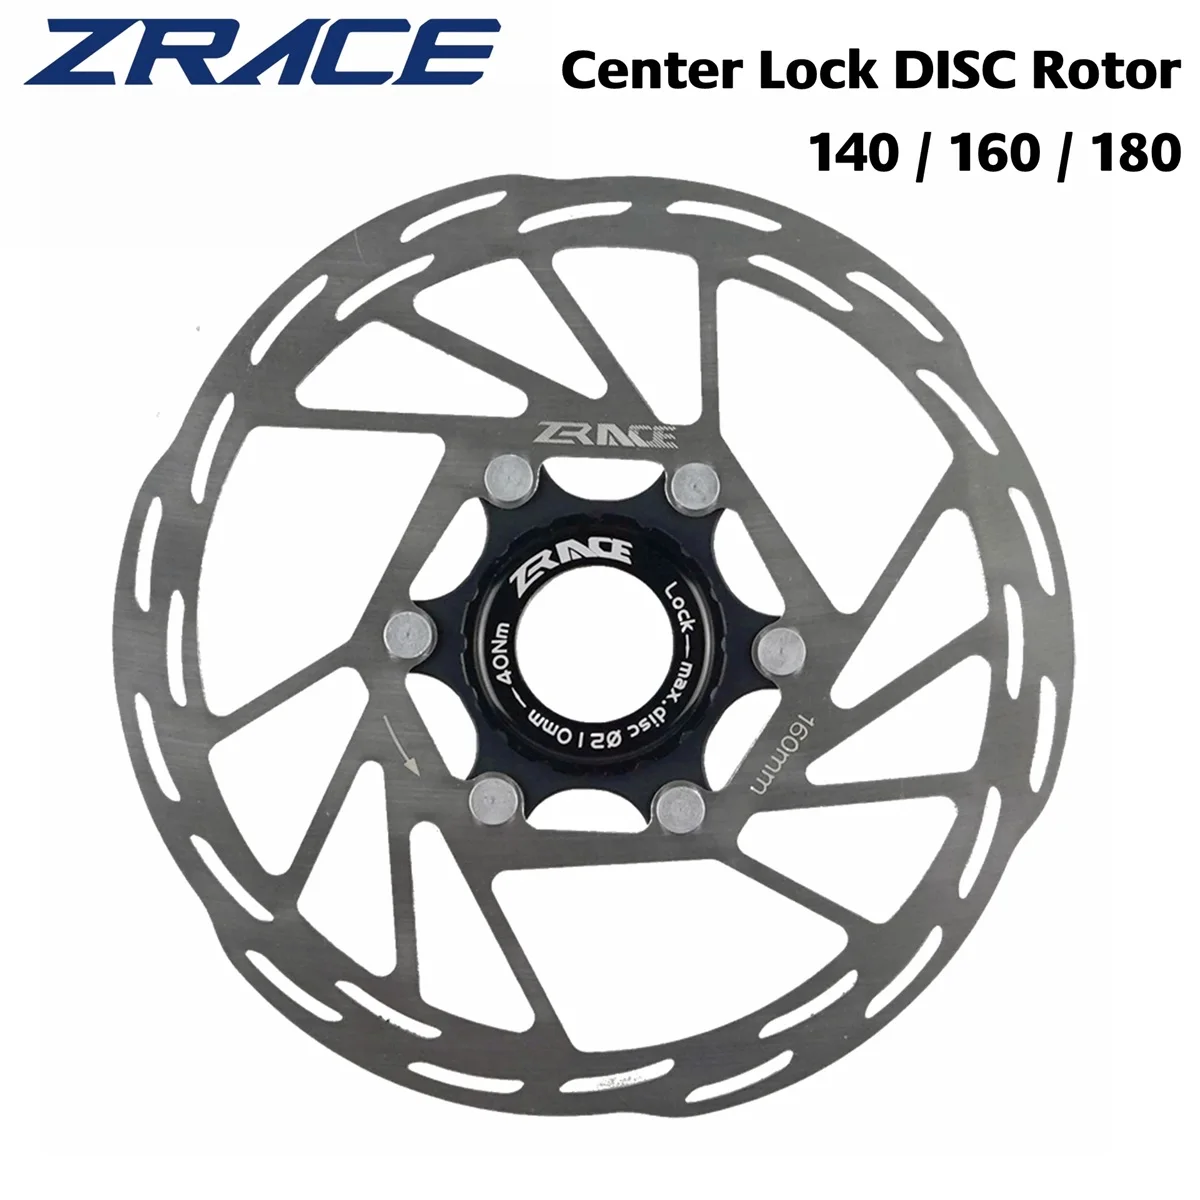 

Новый дисковый ротор ZRACE с центральным замком, Велосипедный тормозной ротор с сильным рассеиванием тепла, плавающий ротор 140 мм, 160 мм, 180 мм, дисковый тормоз для горных и дорожных велосипедов